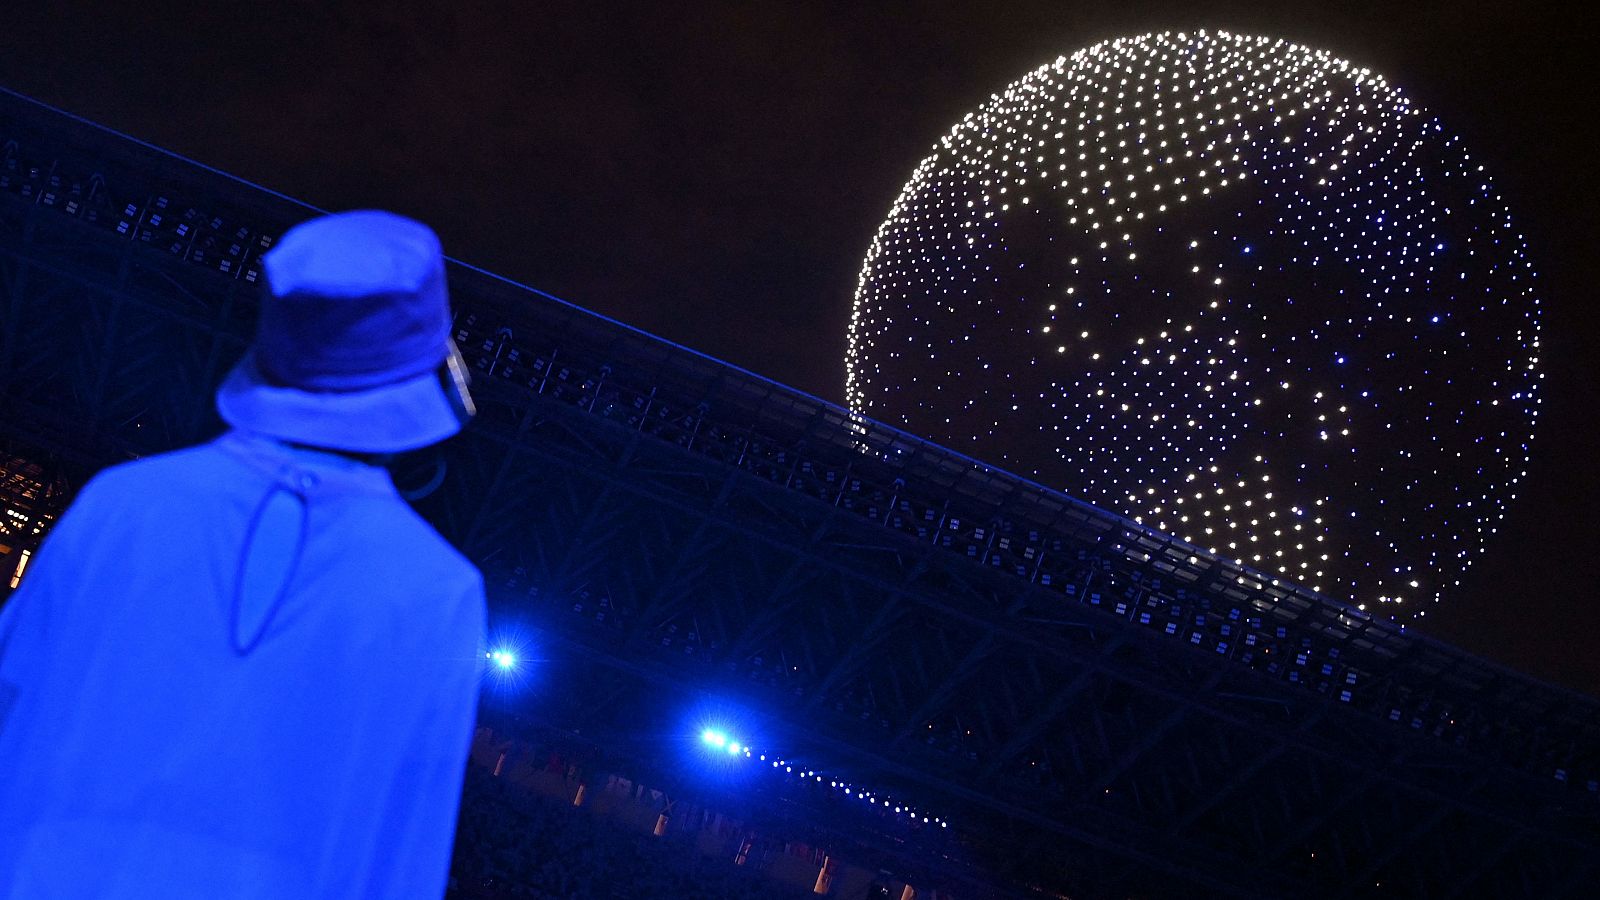 Imagen de los casi 2.000 drones que han iluminado el cielo del estado Olímpico de Tokio